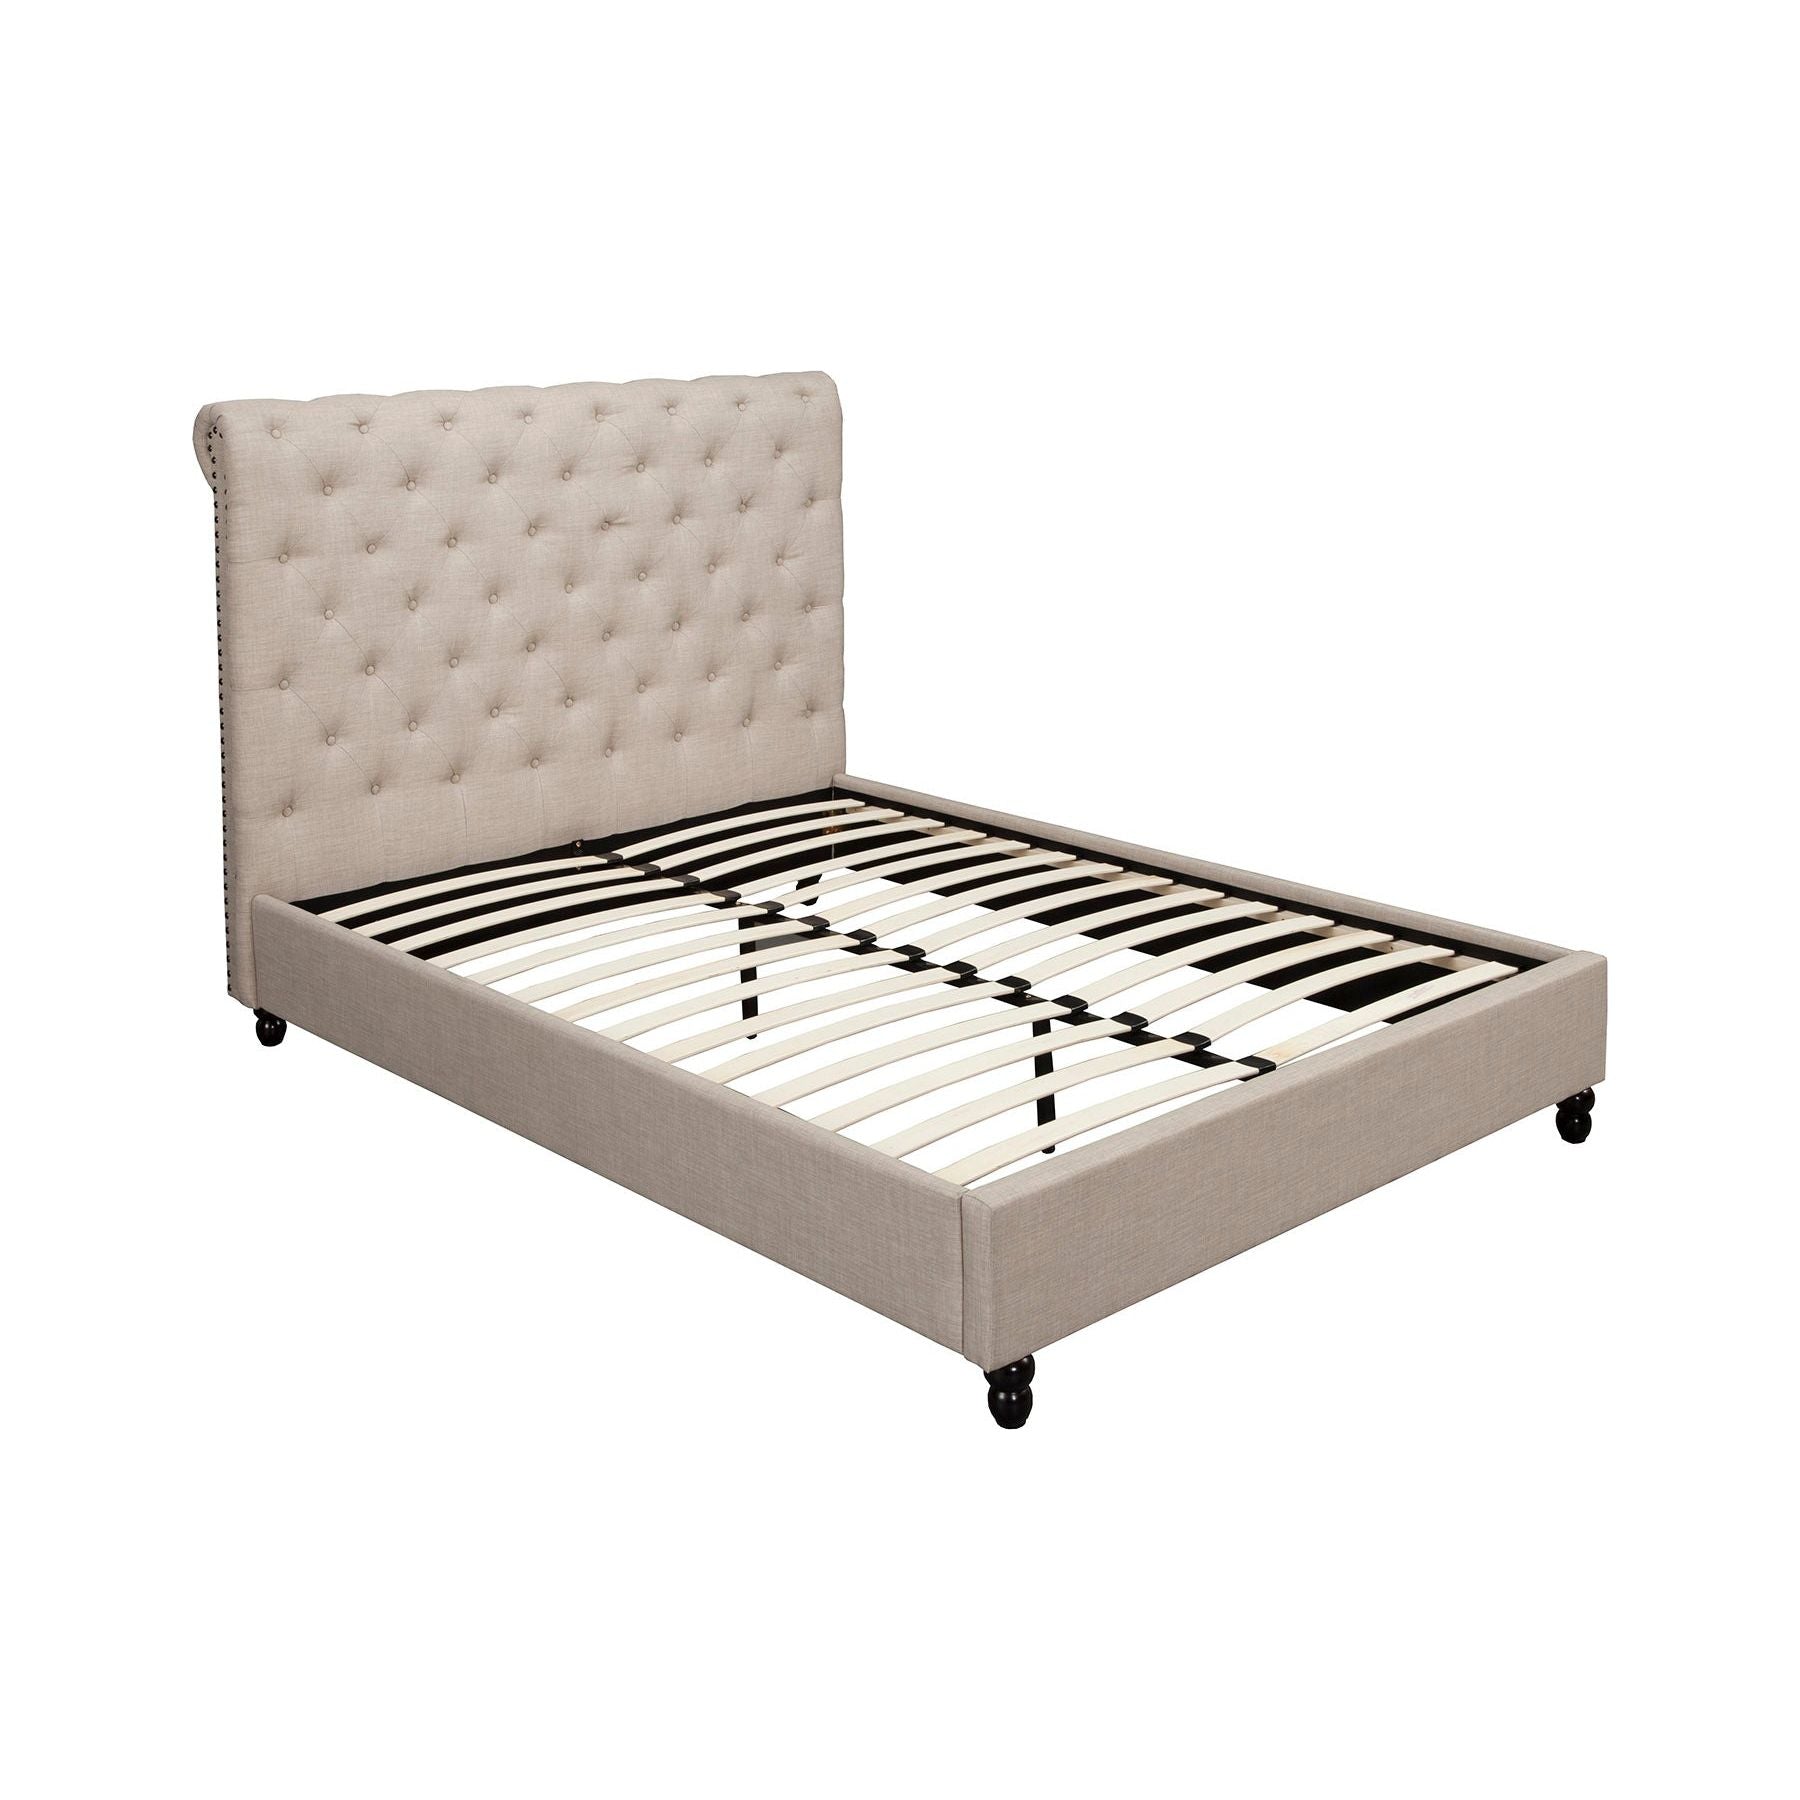 Chloe Queen Bed, Light Grey - Alpine Furniture